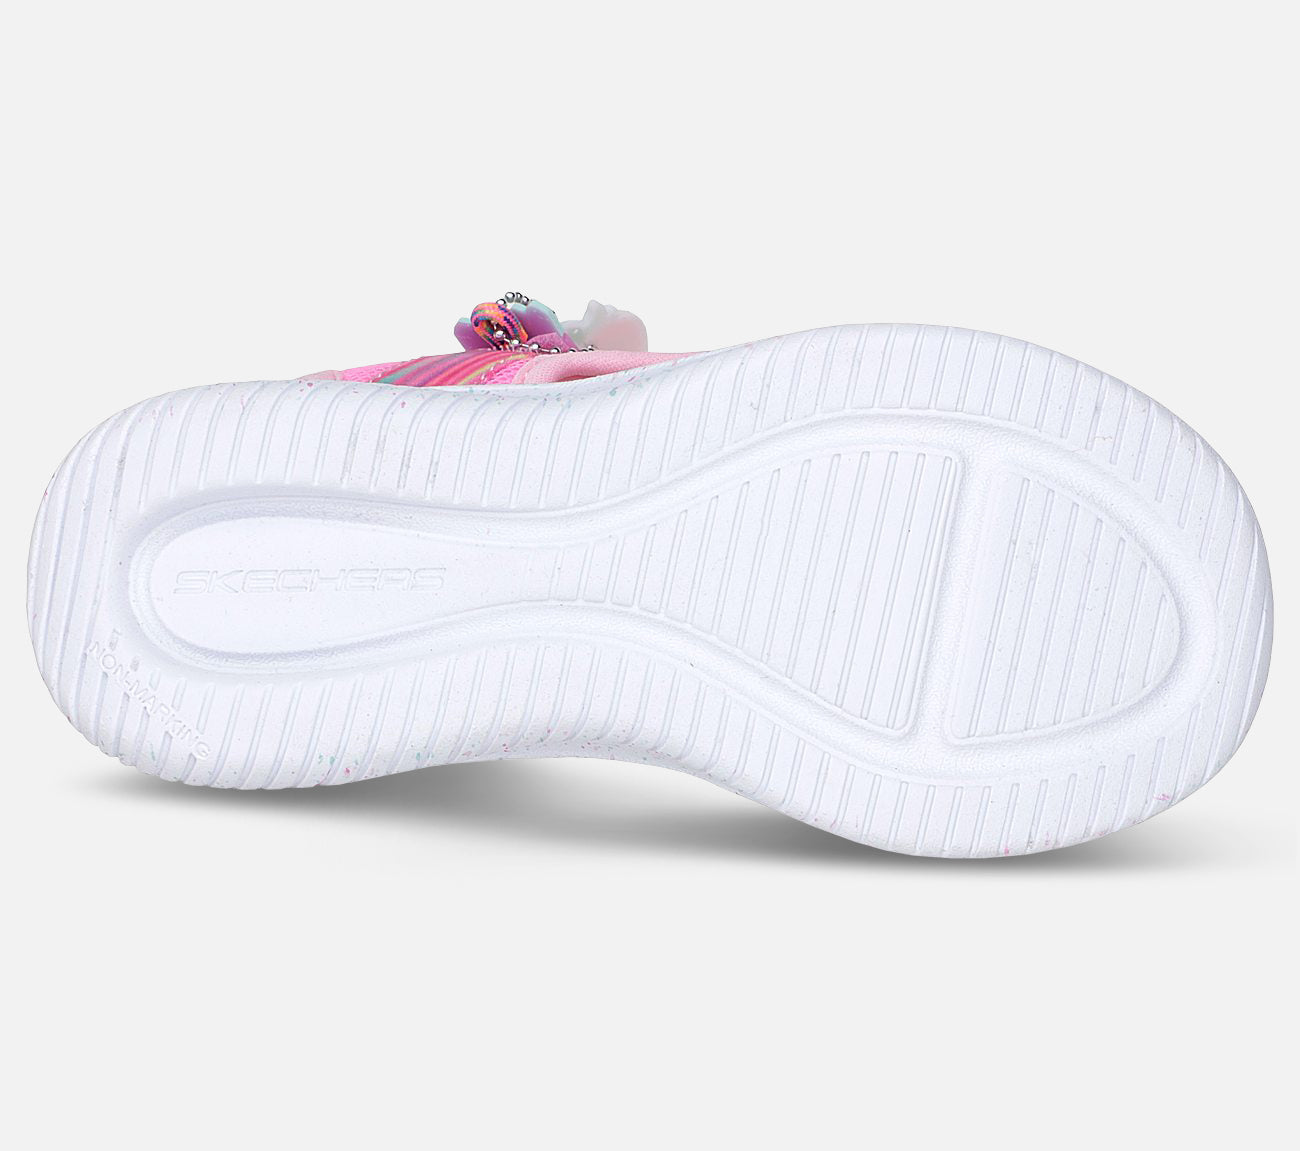 Jumpsters - Splasherz Sandal Sandal Skechers